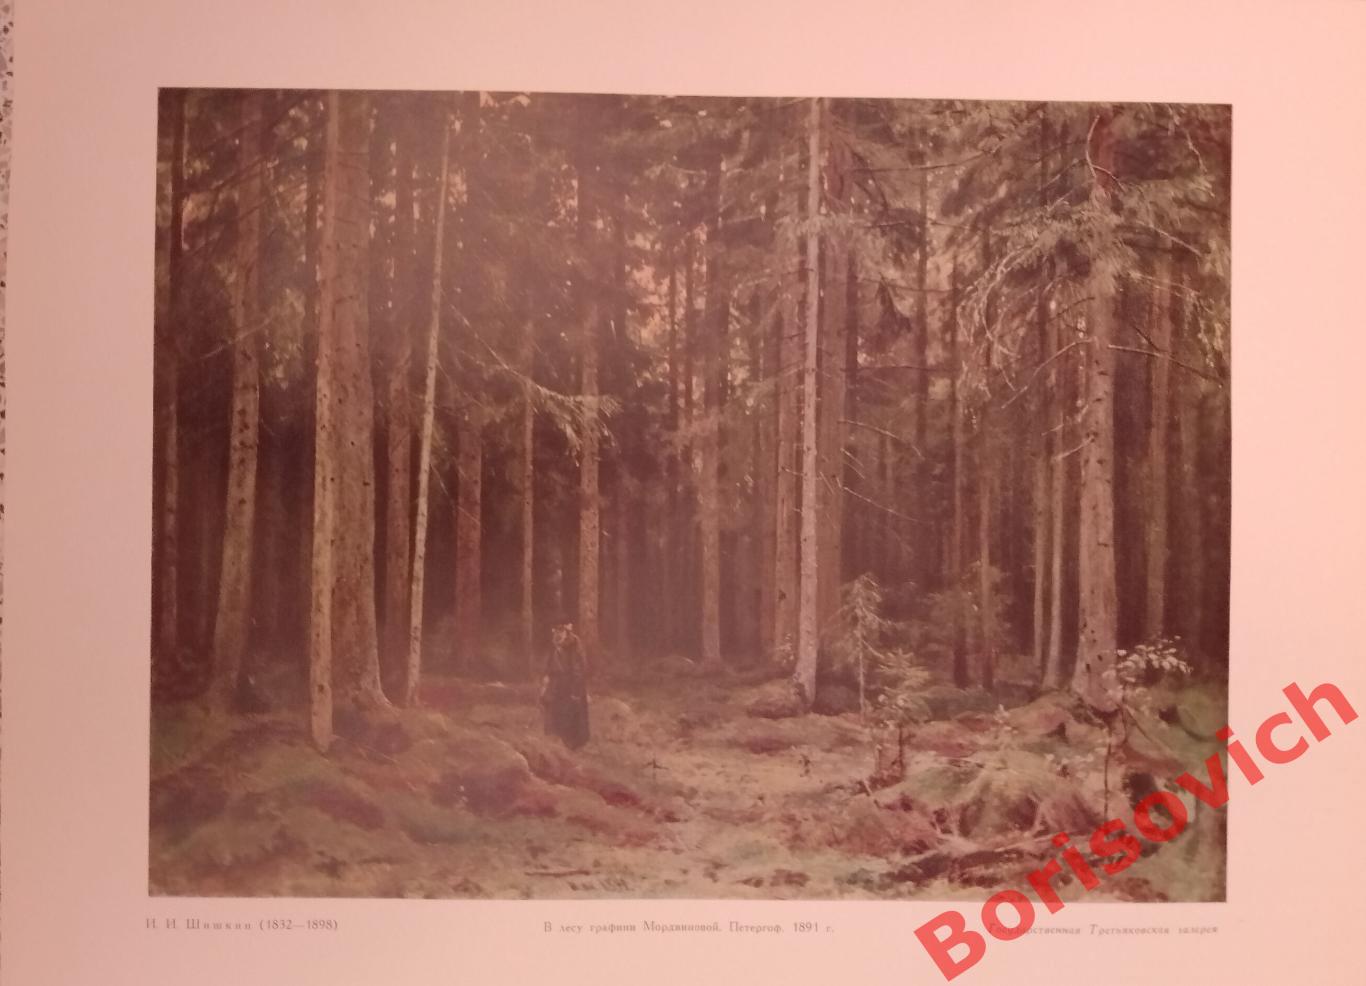 ШИШКИН В лесу графини Мордвиновой.Репродукция из набора